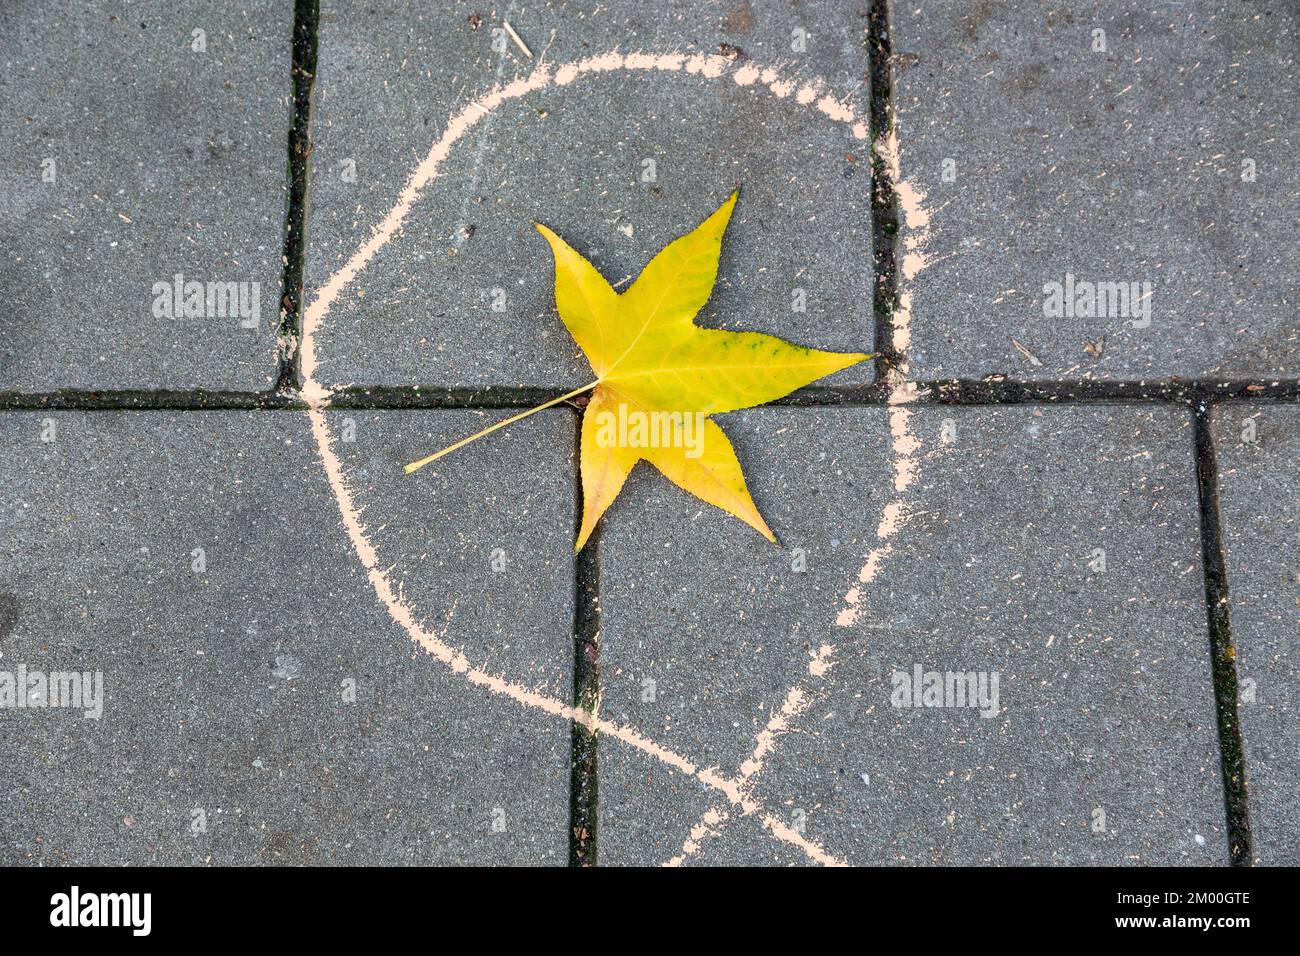 Foglia di acero giallastro caduta al suolo al centro di un segno di gocciolamento di vernice. Bruxelles. Foto Stock